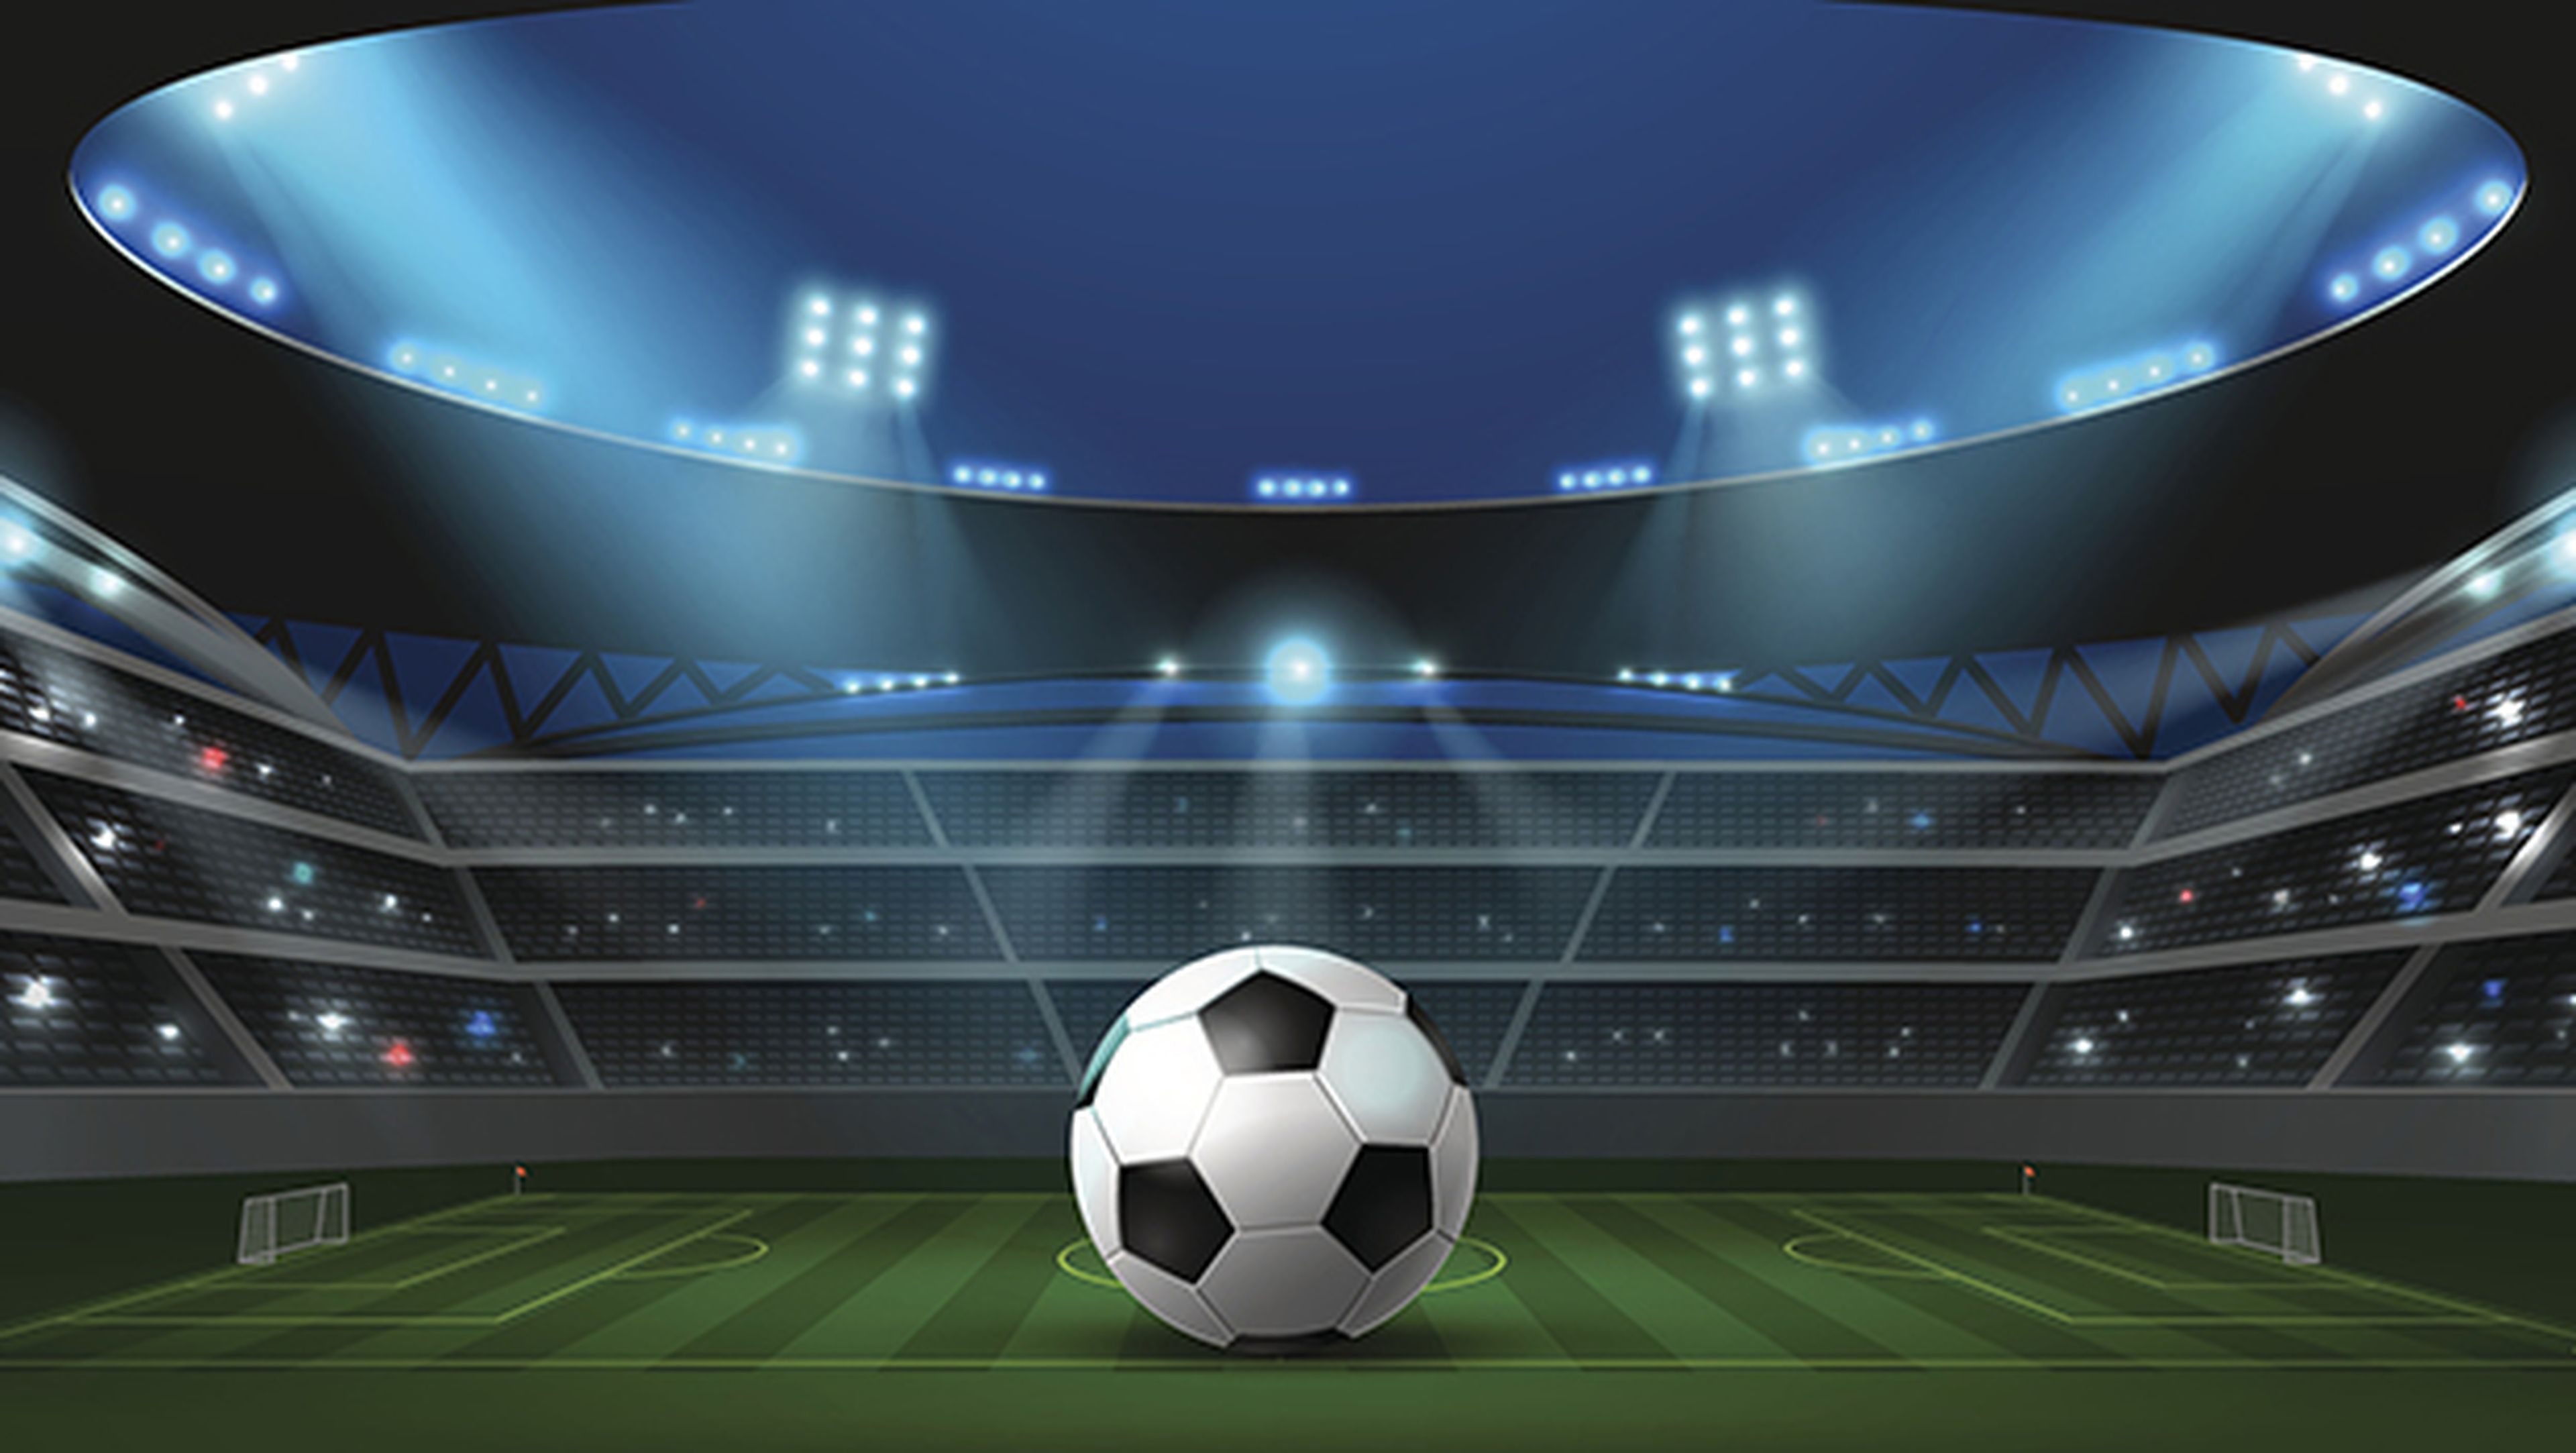 Fútbol Gratis TV: Ver Partidos En Vivo Guía Fácil for Android